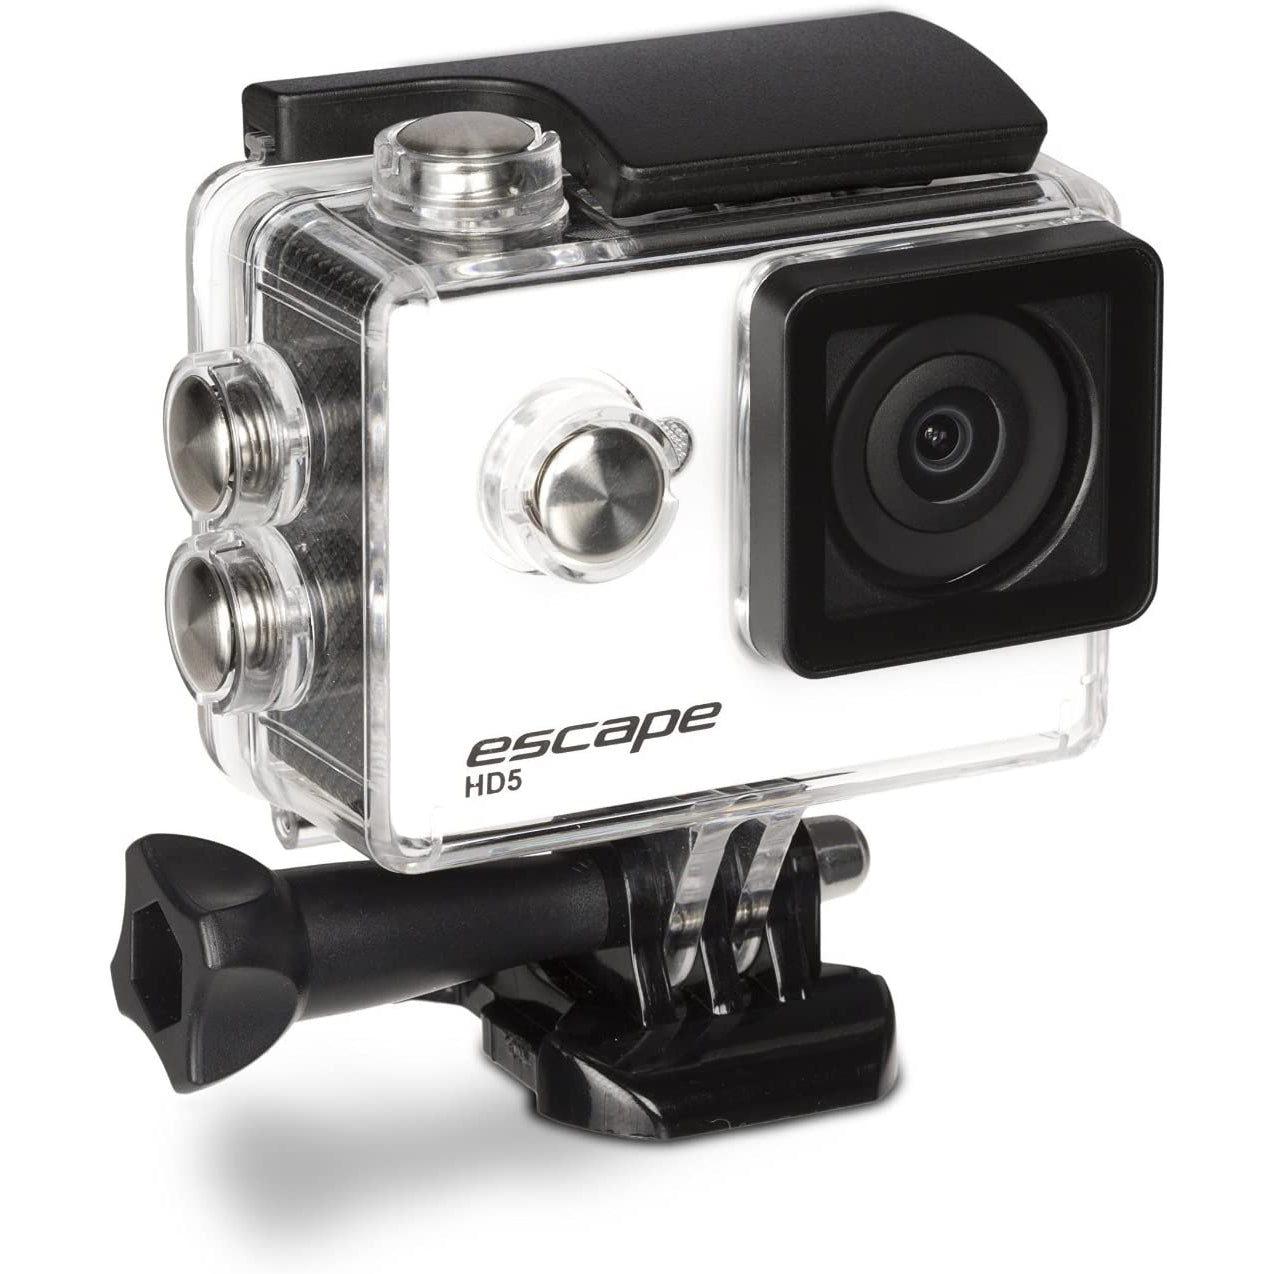 Kitvision Escape HD5 Action Camera - White / Black